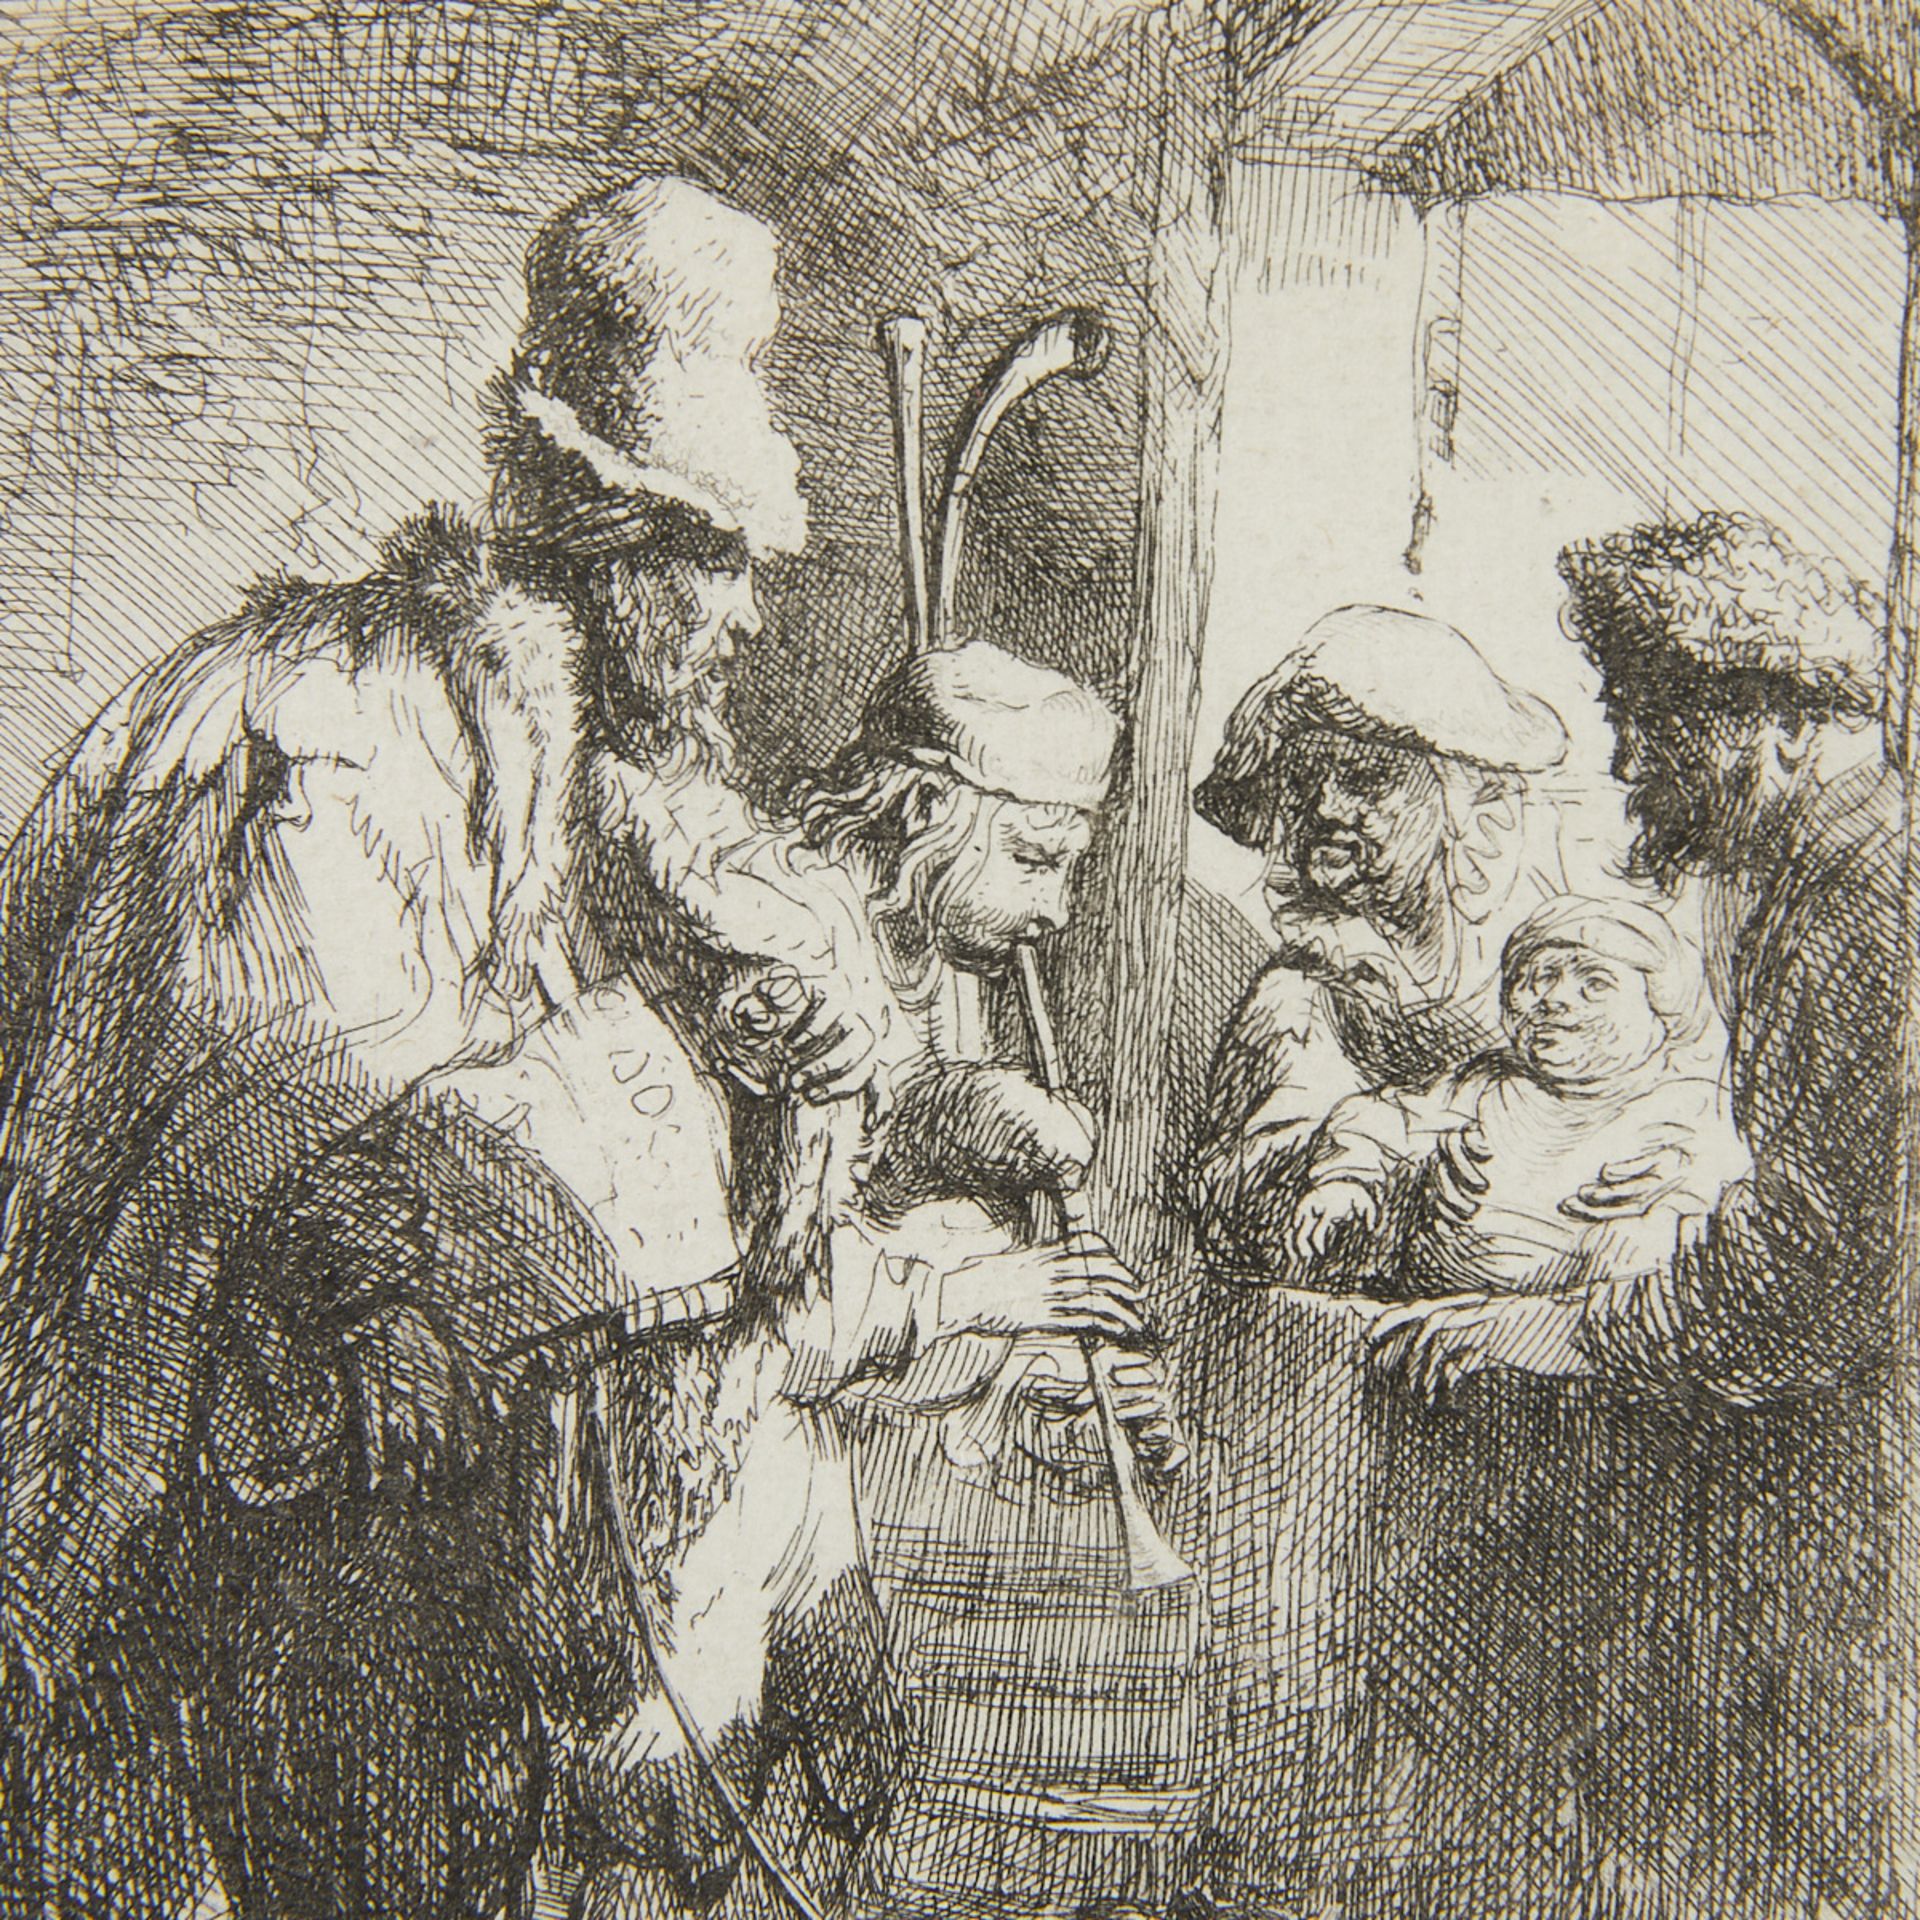 Rembrandt "Strolling Musicians" Etching 1635 - Bild 4 aus 5